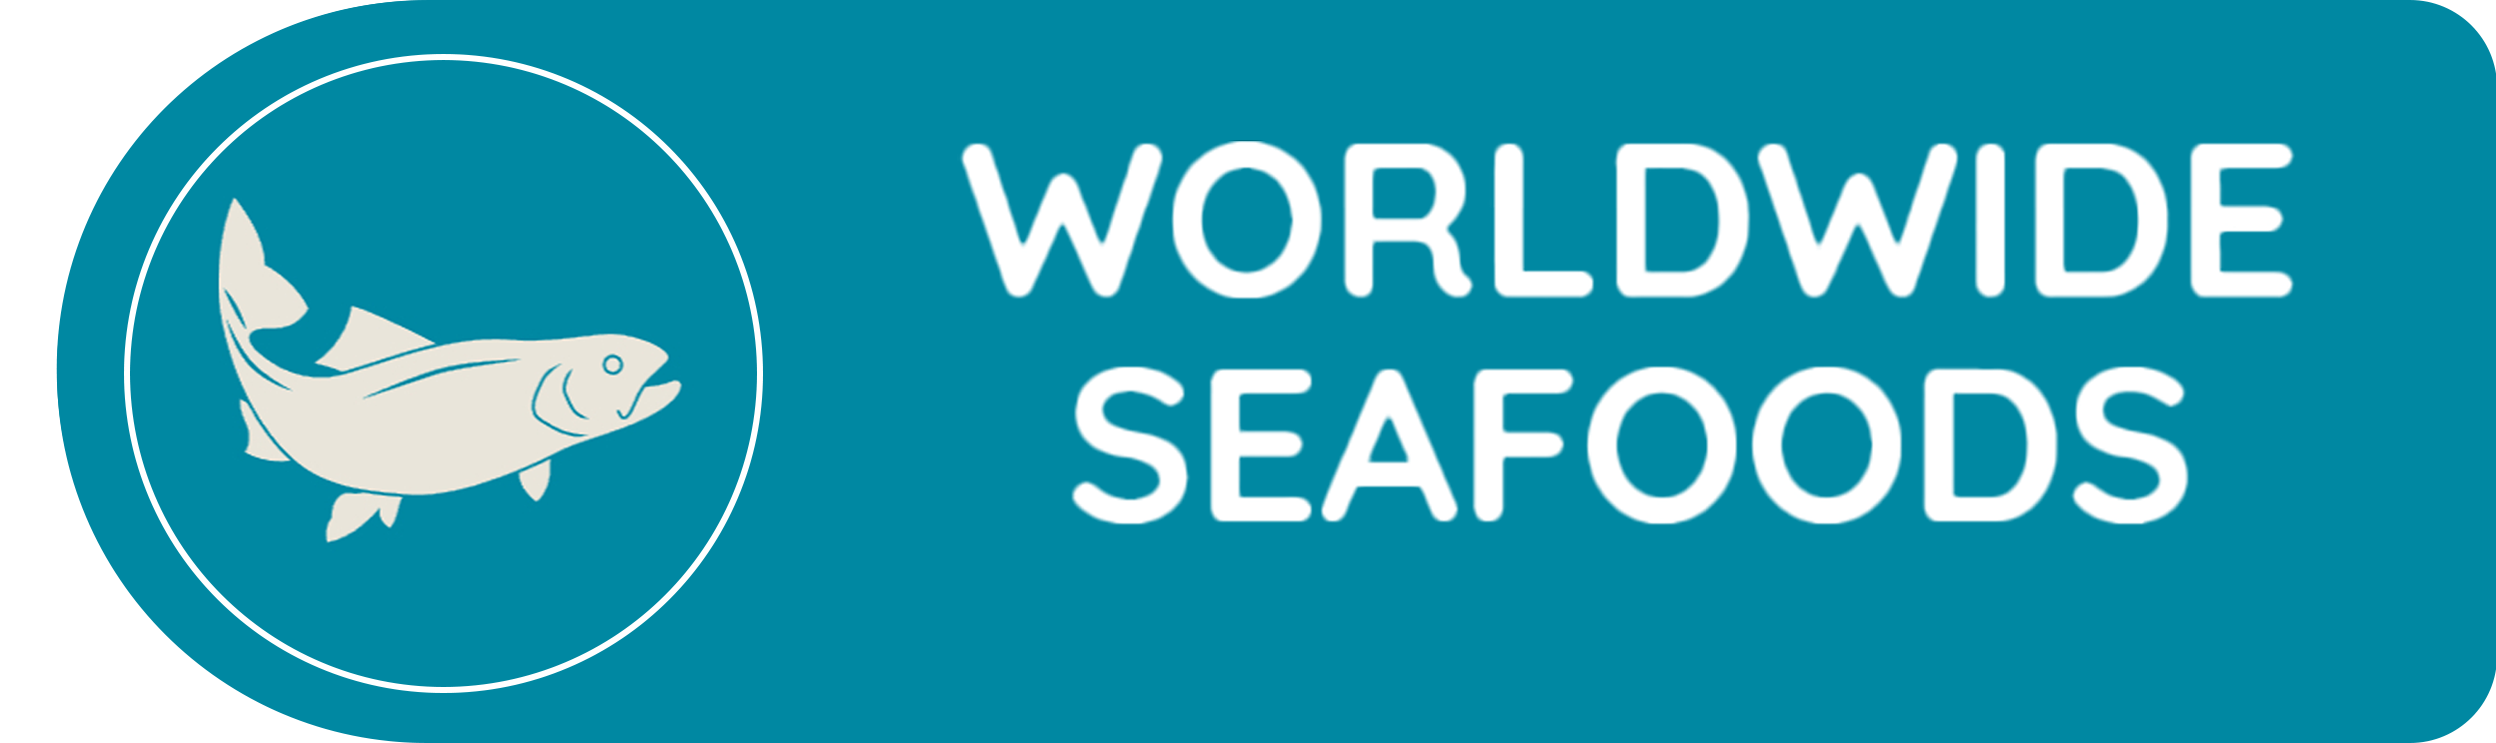 Worldwide Seafoods Logo